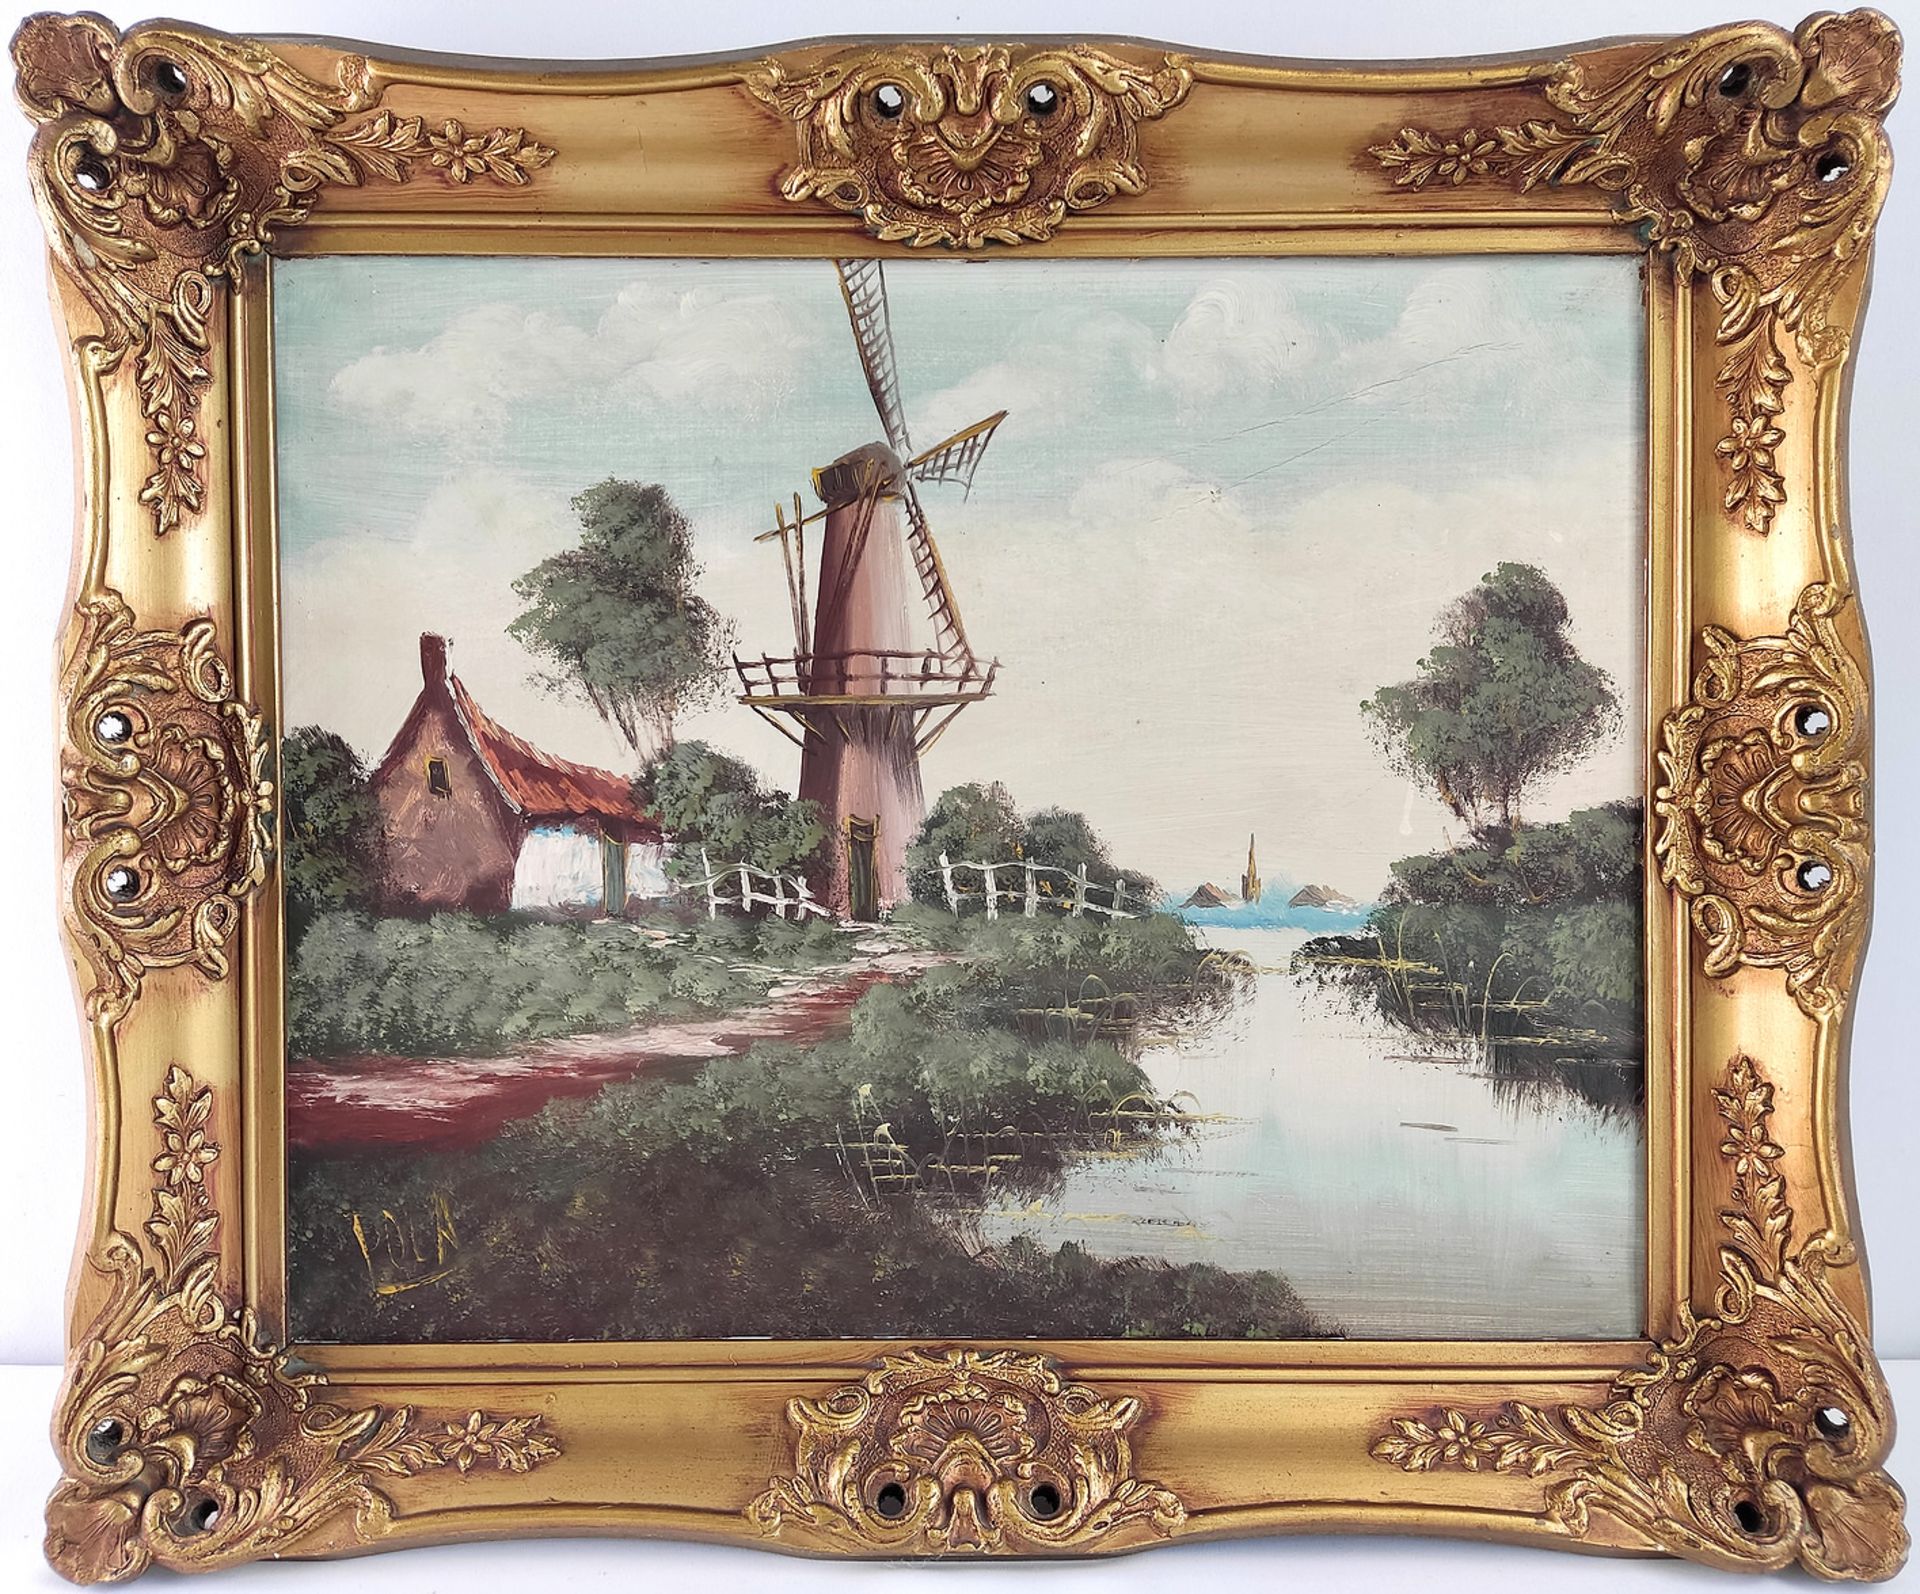 Windmühle am Fluss, Öl/Leinwand, sig. Pola, 40x50cm